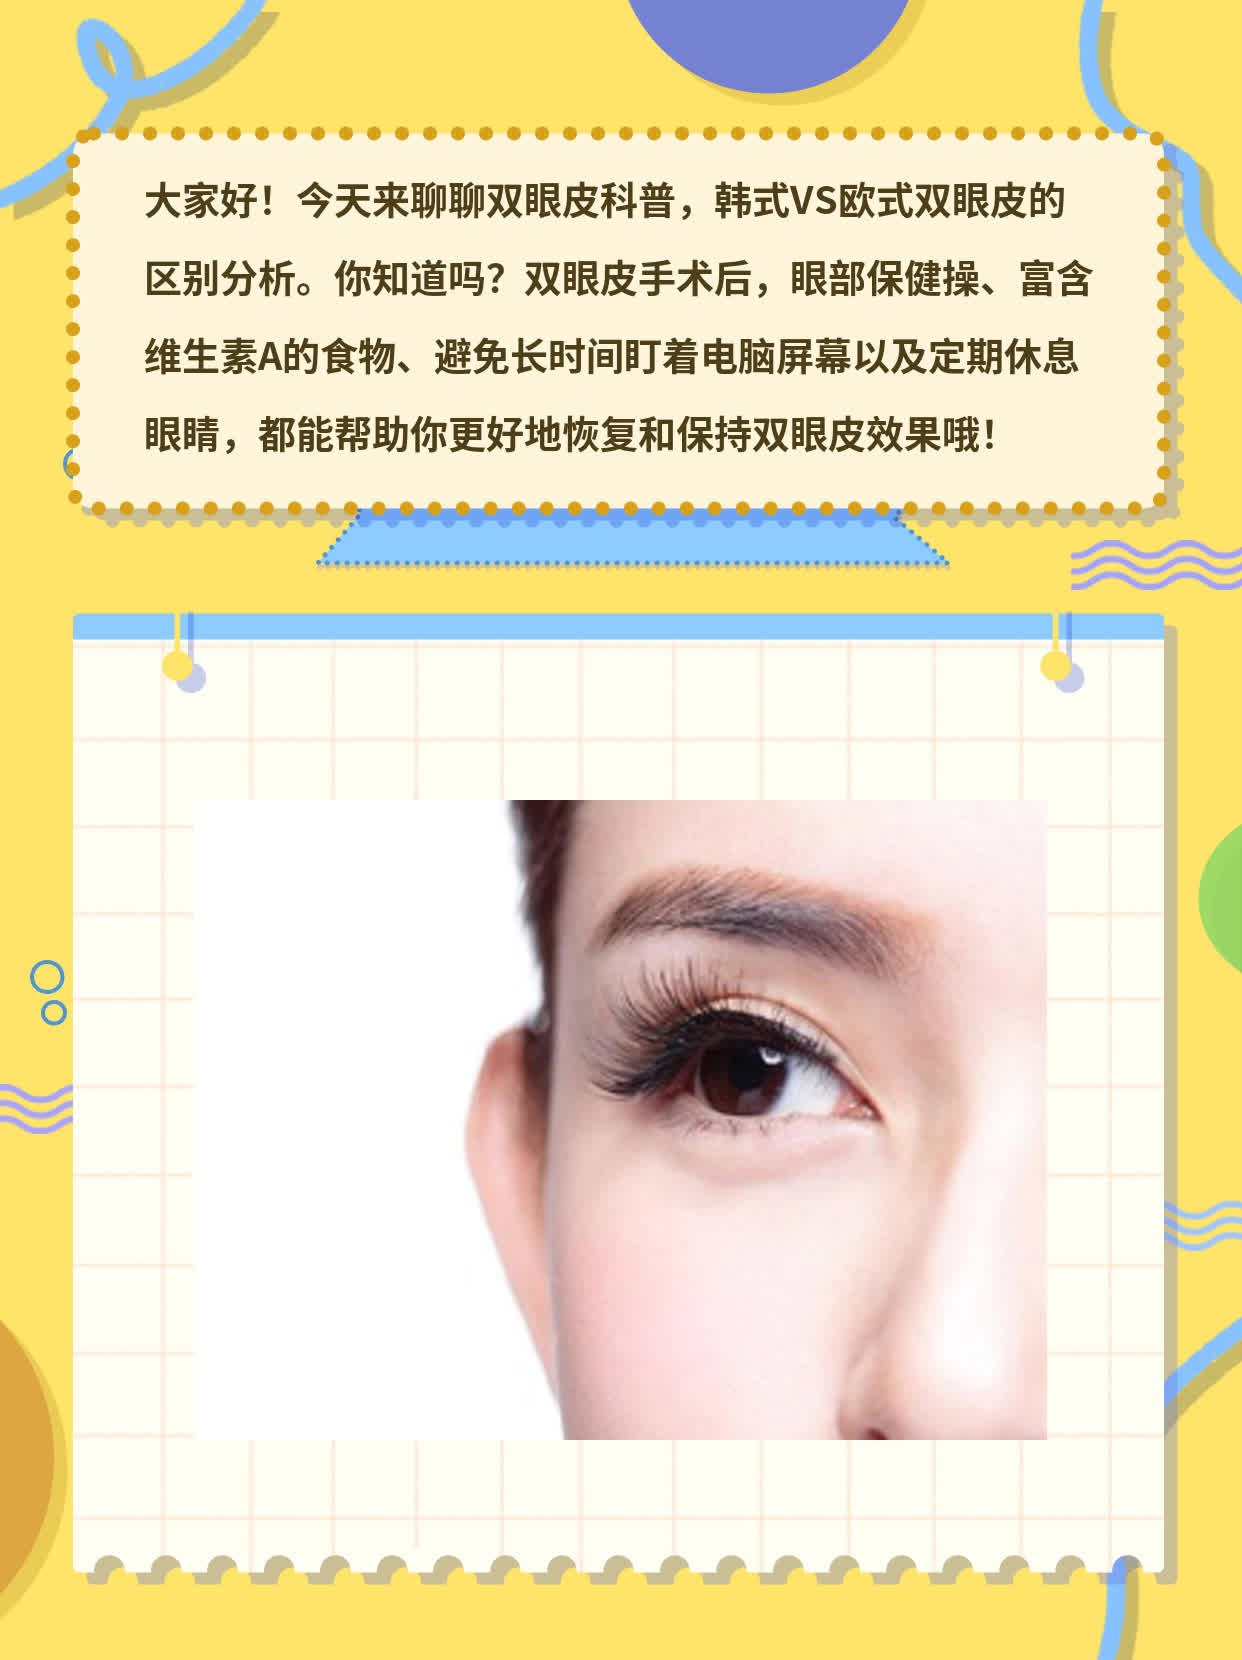 「双眼皮科普」 韩式VS欧式双眼皮的区别分析